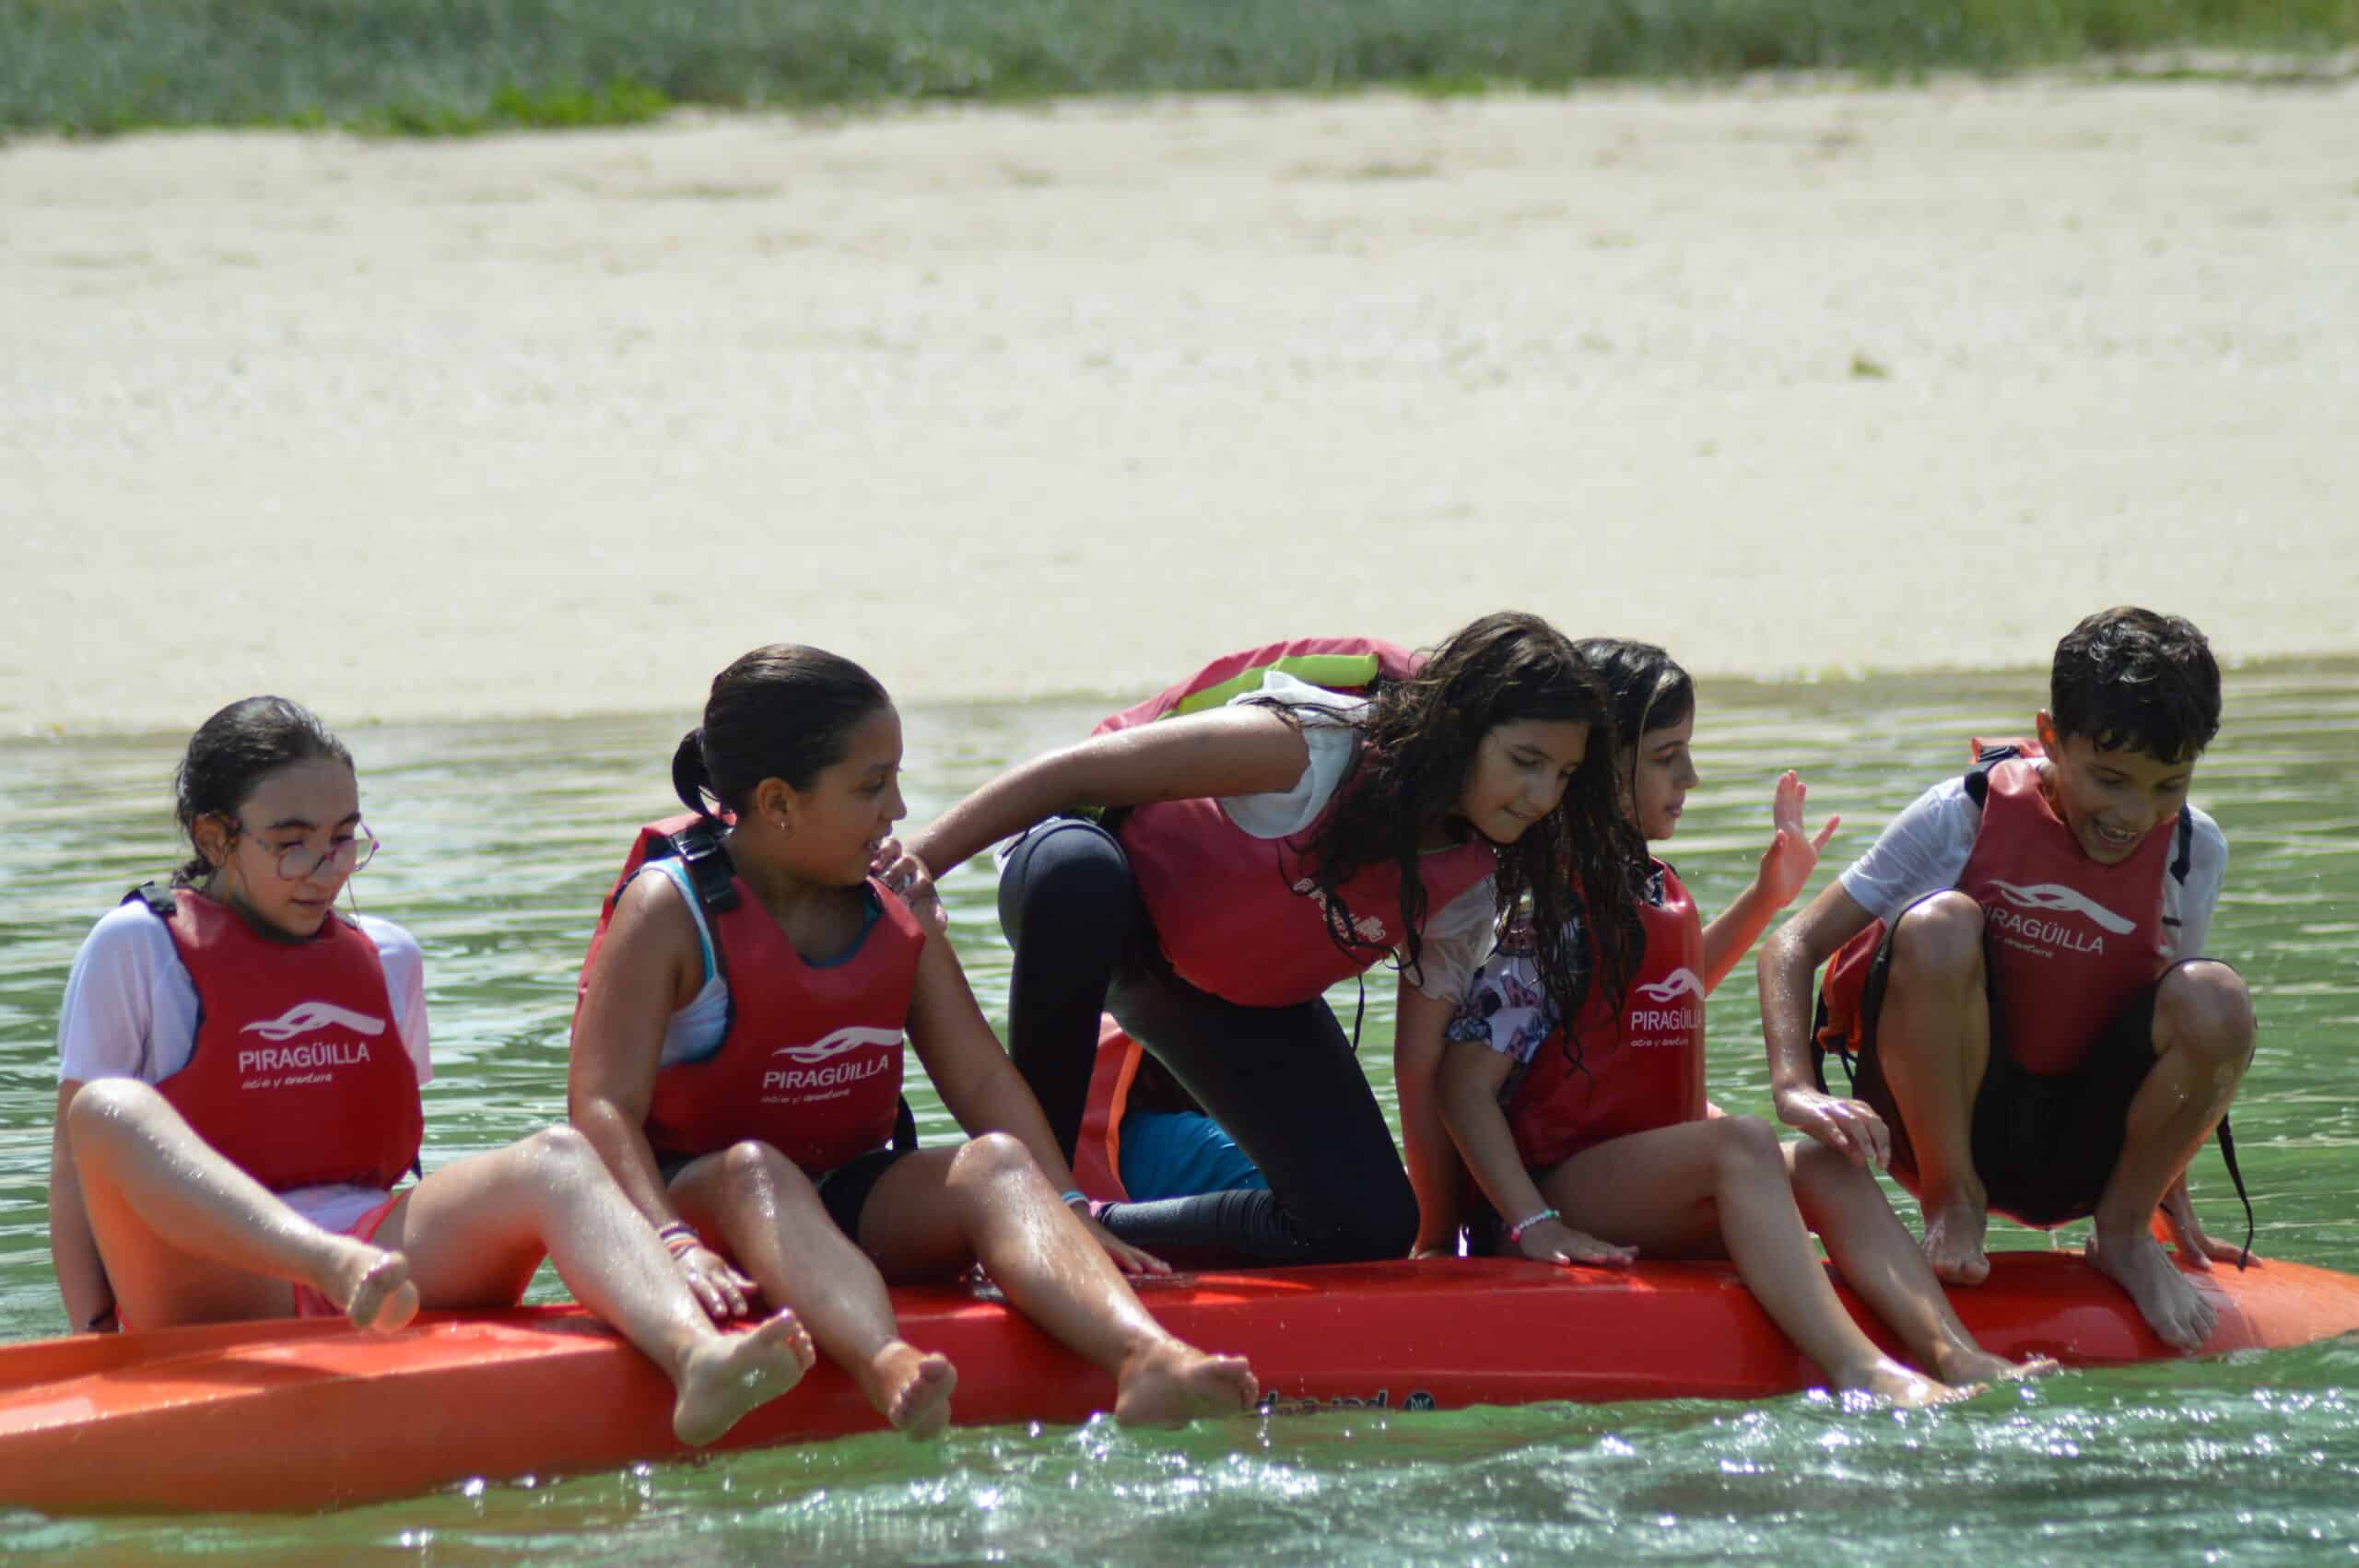 excursiones en kayak con alumnos